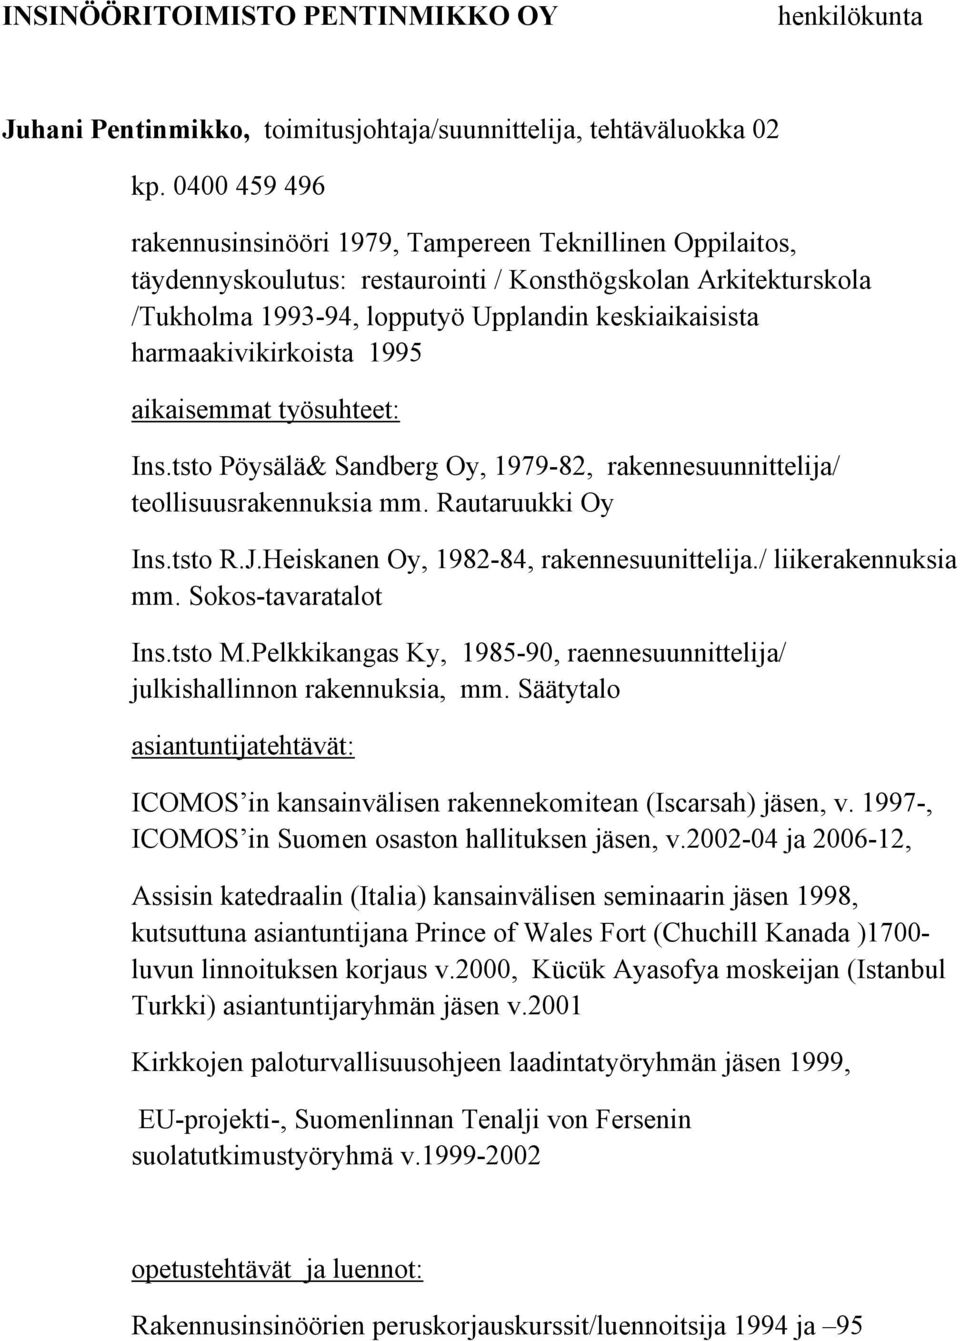 harmaakivikirkoista 1995 aikaisemmat työsuhteet: Ins.tsto Pöysälä& Sandberg Oy, 1979-82, rakennesuunnittelija/ teollisuusrakennuksia mm. Rautaruukki Oy Ins.tsto R.J.